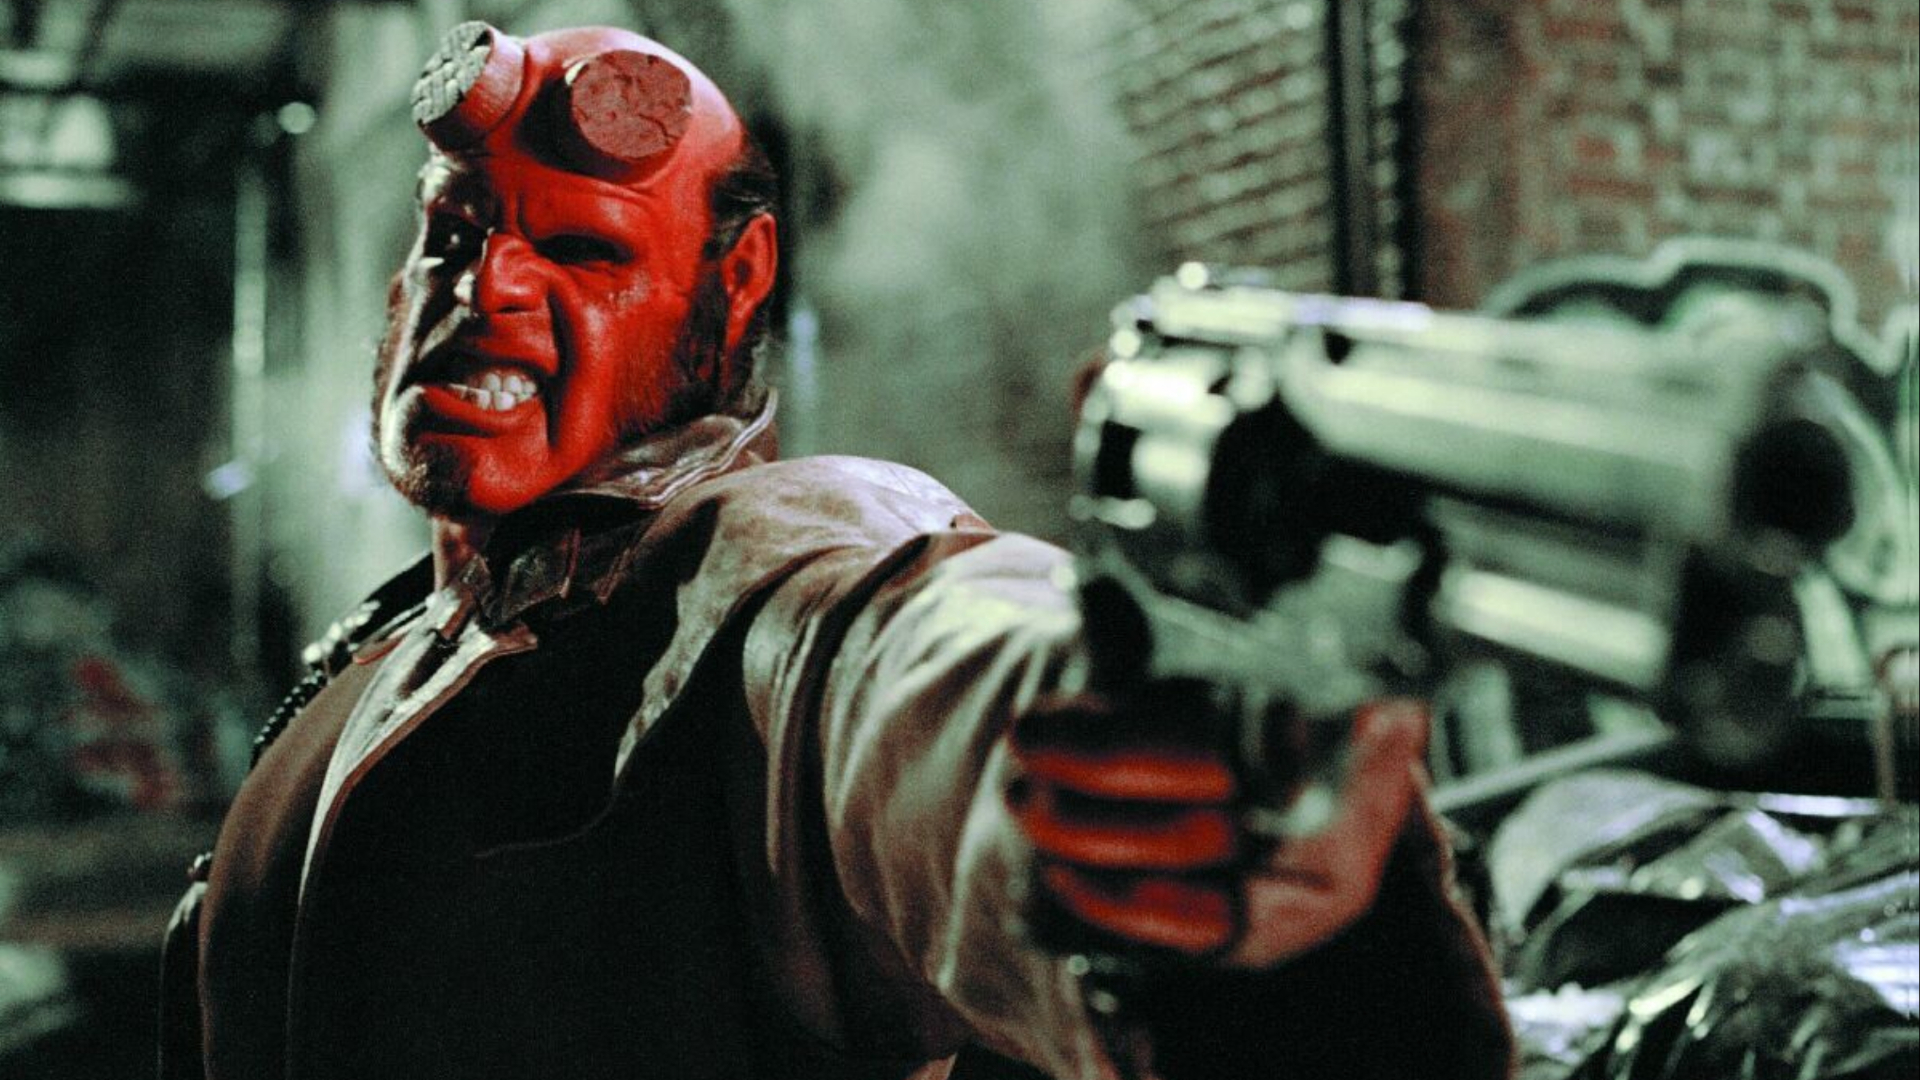 Hellboy rangendo os dentes e apontando sua arma.